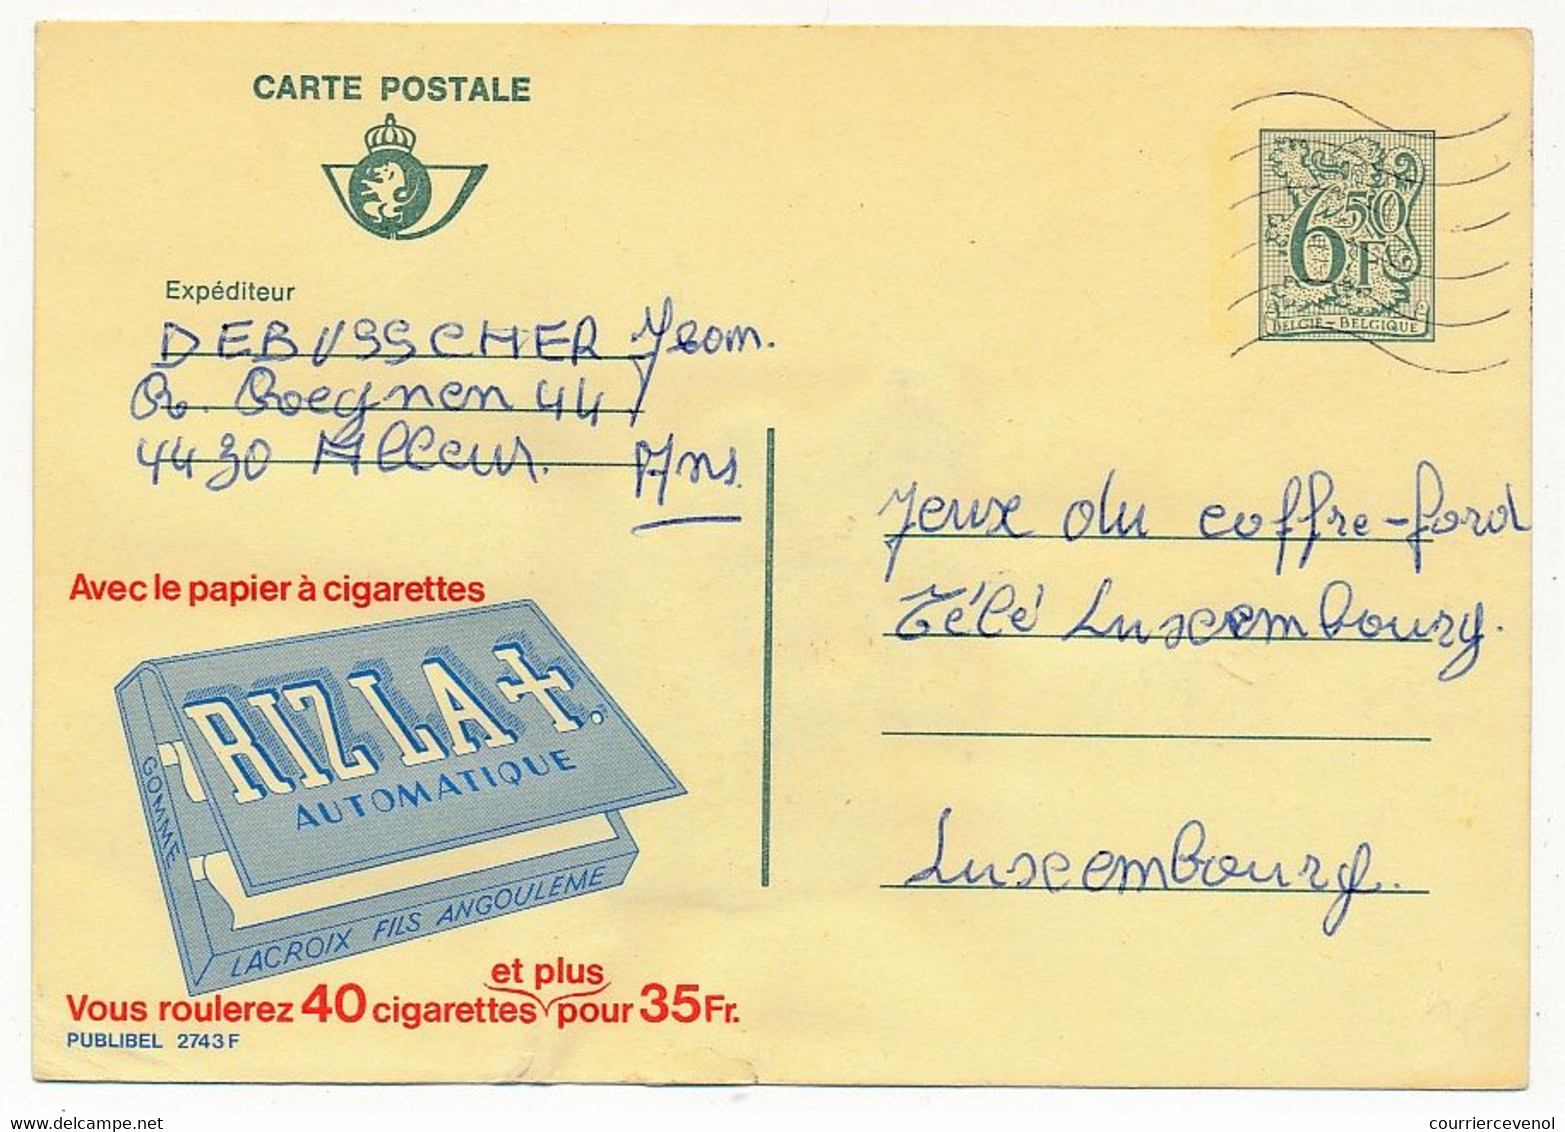 BELGIQUE => Carte Postale - 6F50 - Publicité "Papier à Cigarettes RIZ LA"  - Publibel 2743F - Publibels